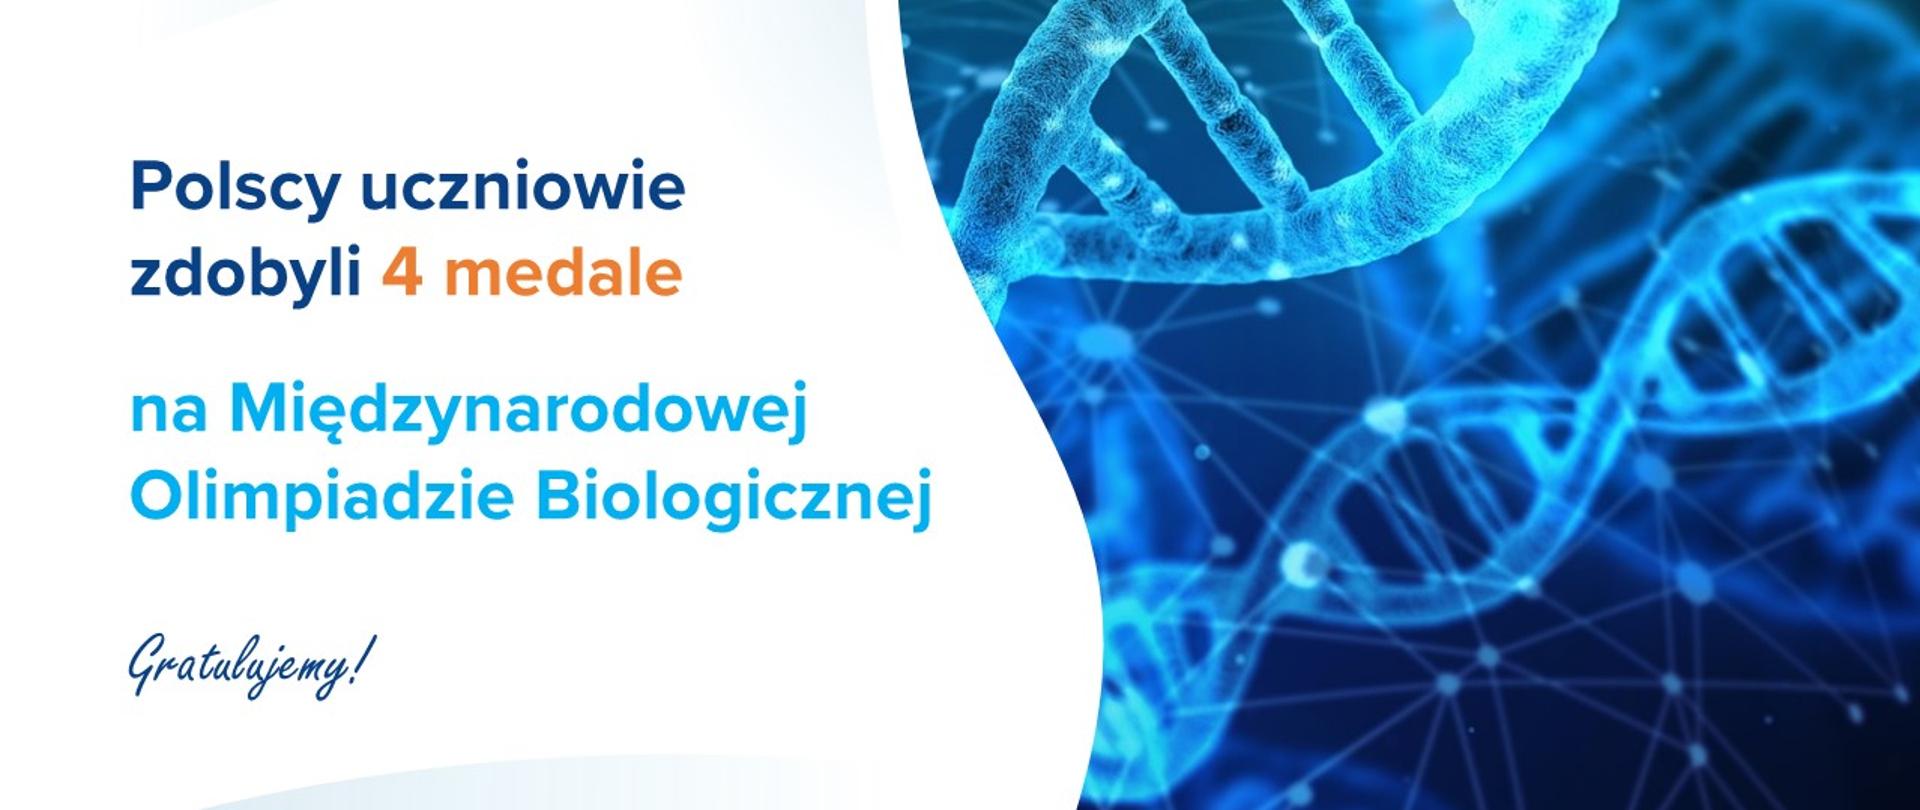 Biało-niebieska grafika z tekstem "Polscy uczniowie zdobyli 4 medale na Międzynarodowej Olimpiadzie Biologicznej. Gratulujemy!"